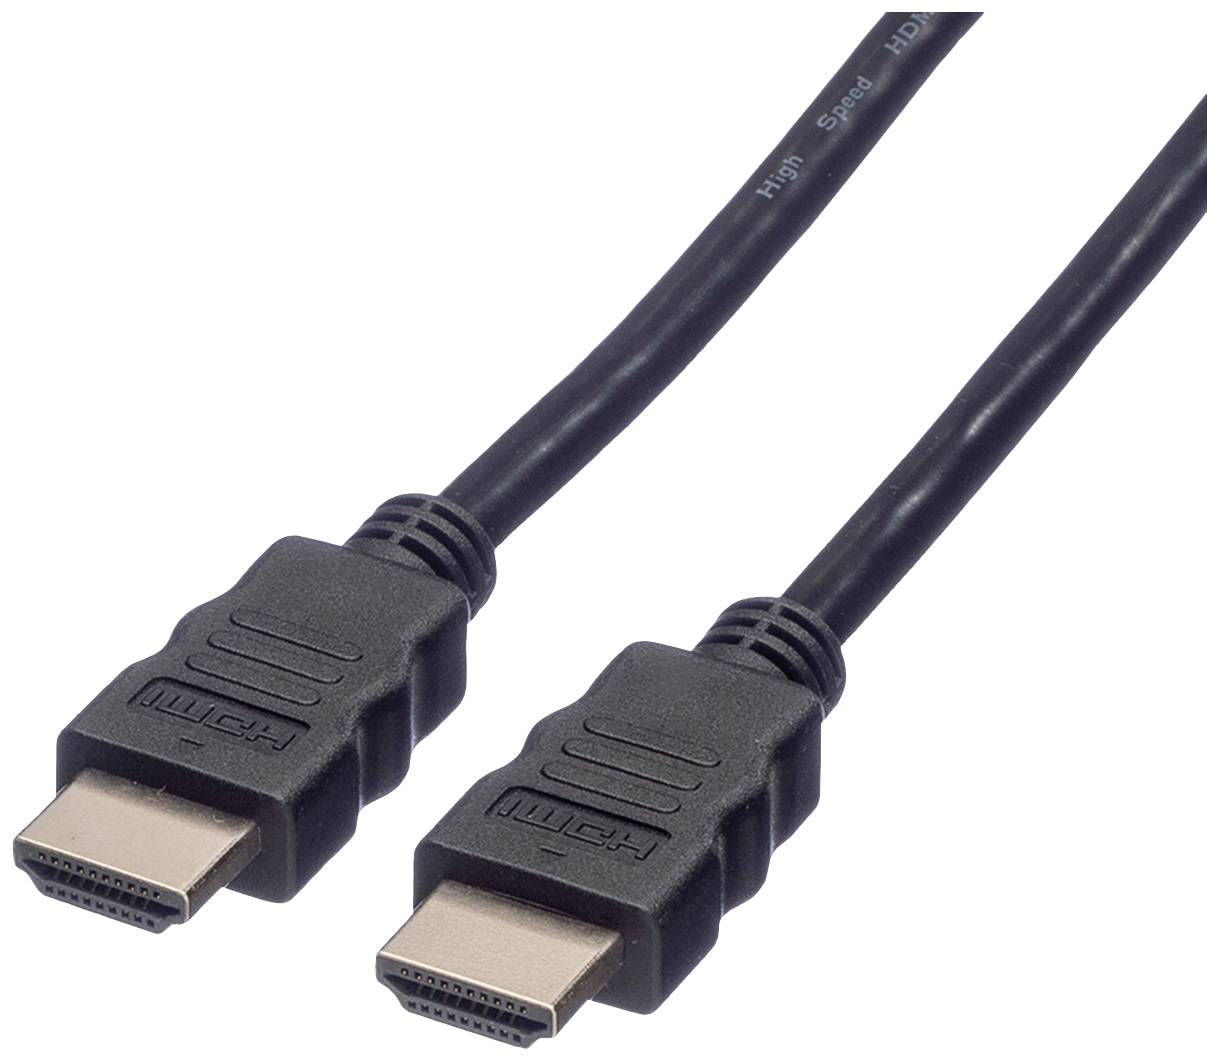 ROLINE HDMIHigh Speed Kabel mit Ethernet 15m